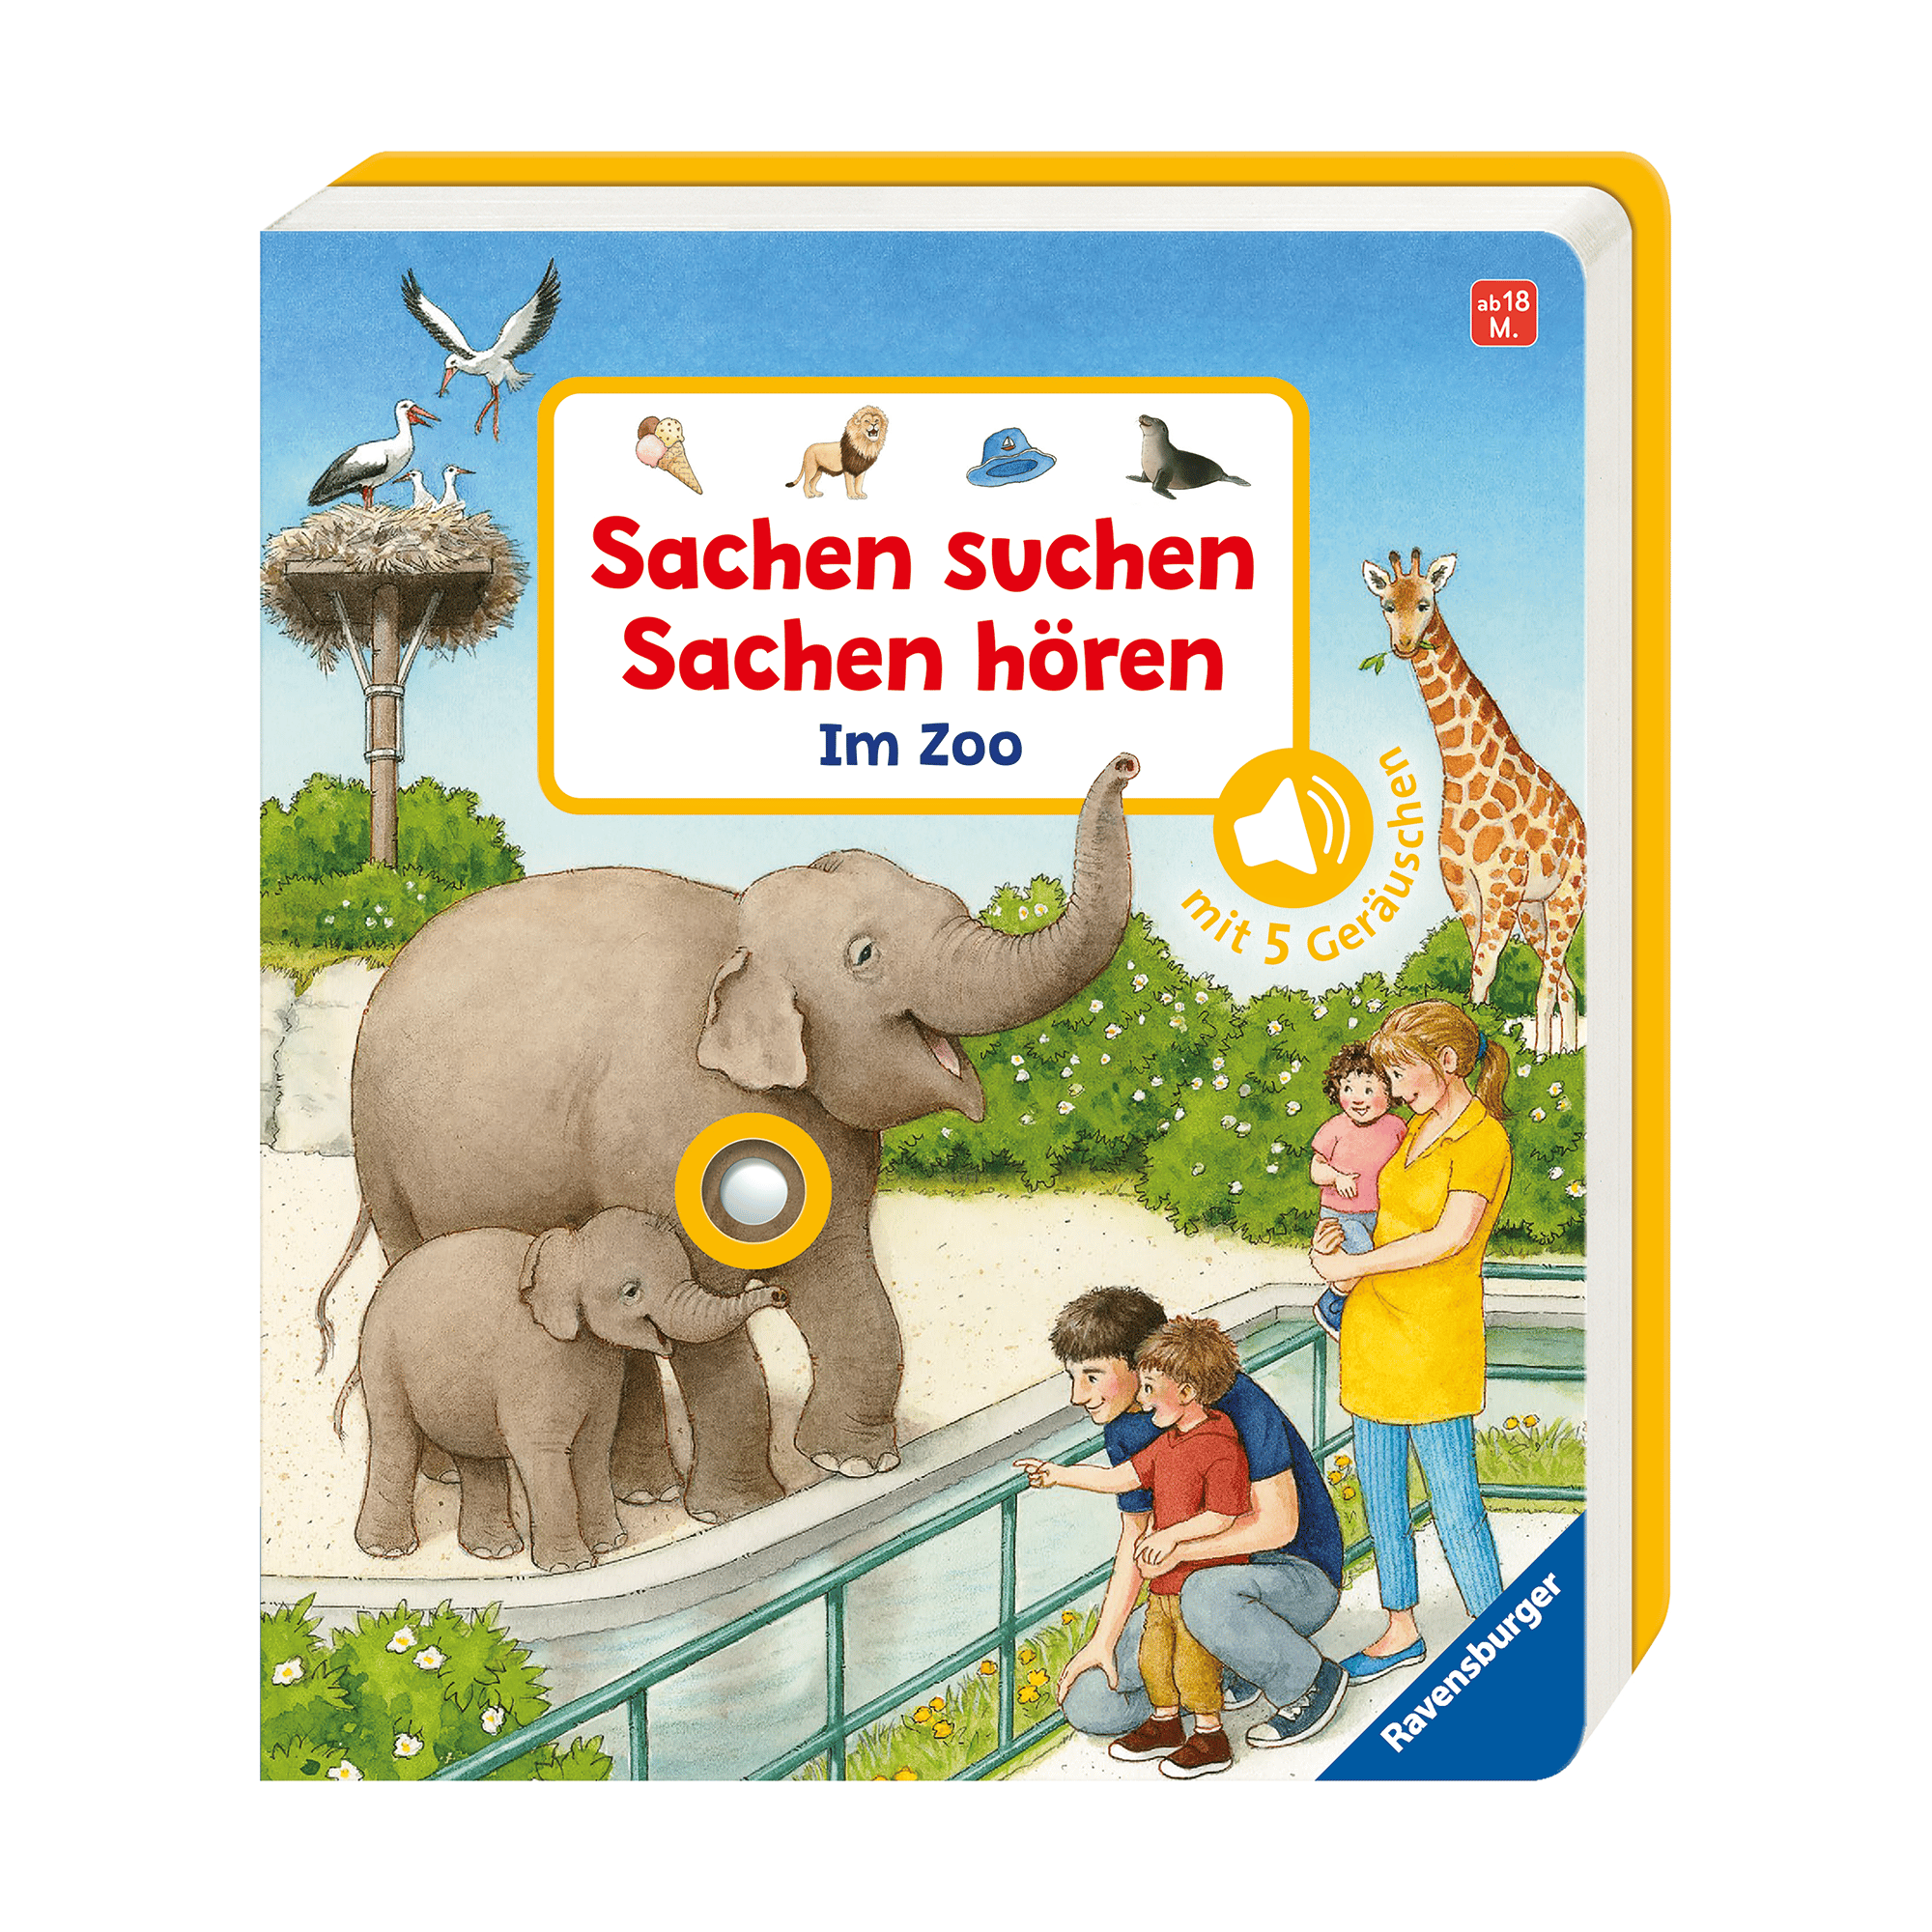 Sachen suchen, Sachen hören: Zoo Ravensburger Mehrfarbig 2000577843602 1